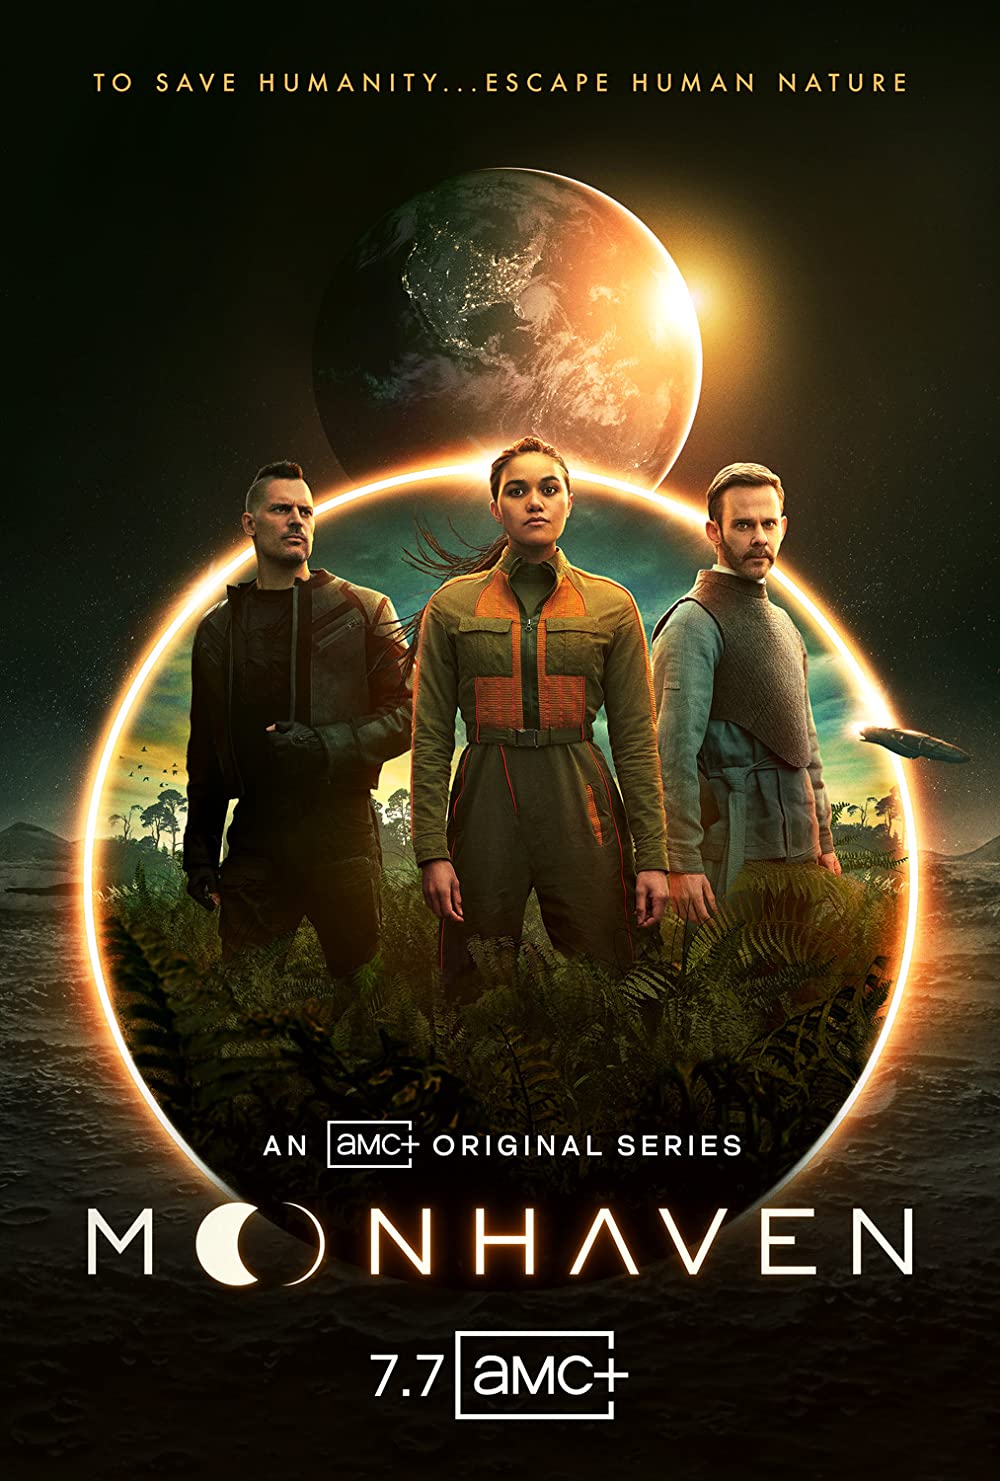 Moonhaven poster